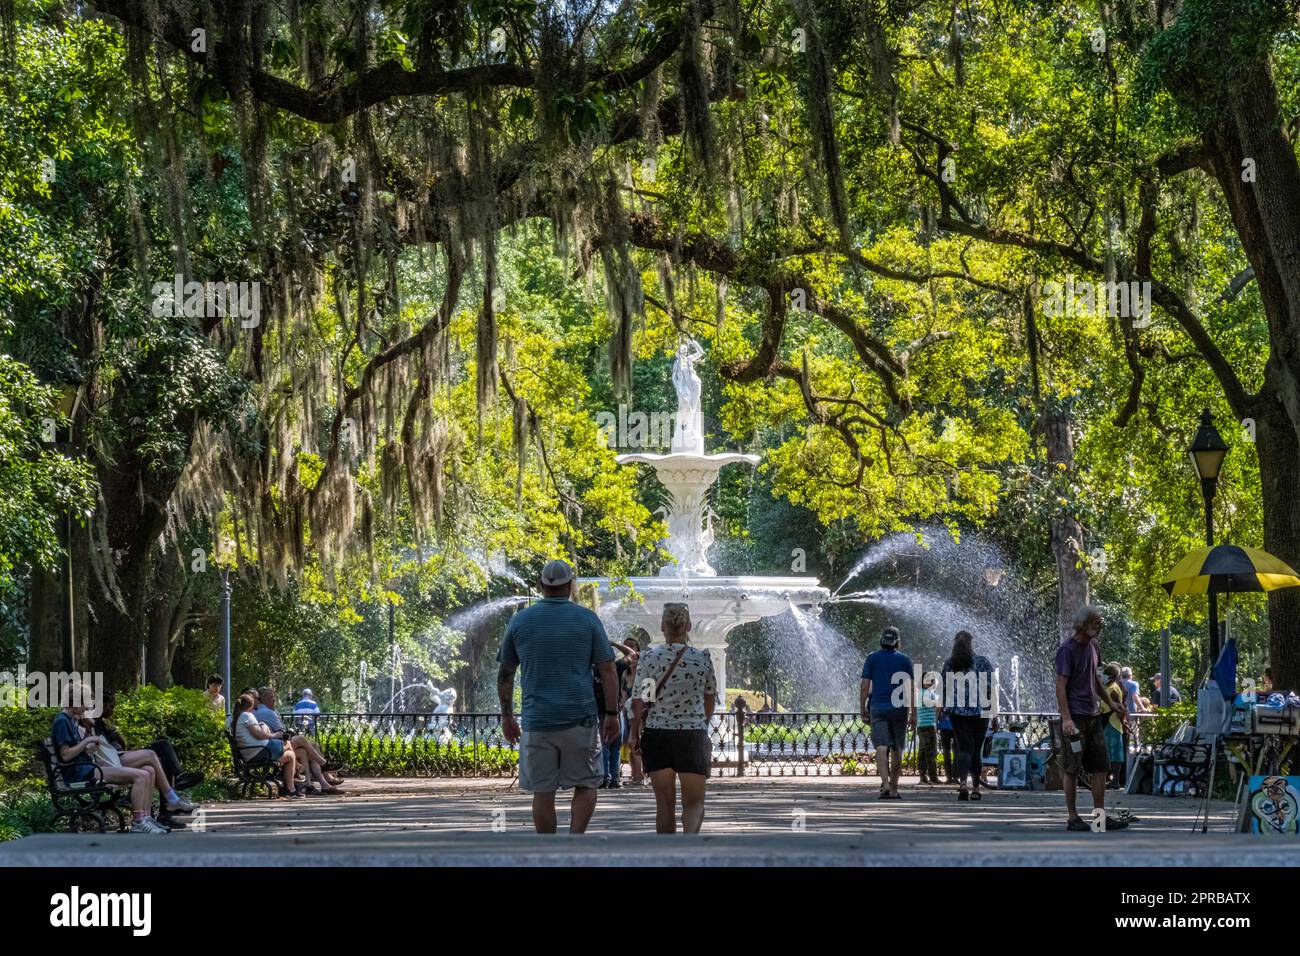 Le persone che si godono un bellissimo pomeriggio primaverile presso il panoramico Forsyth Park con la sua iconica fontana del 1858 a Savannah, il quartiere storico della Georgia. (USA) Foto Stock